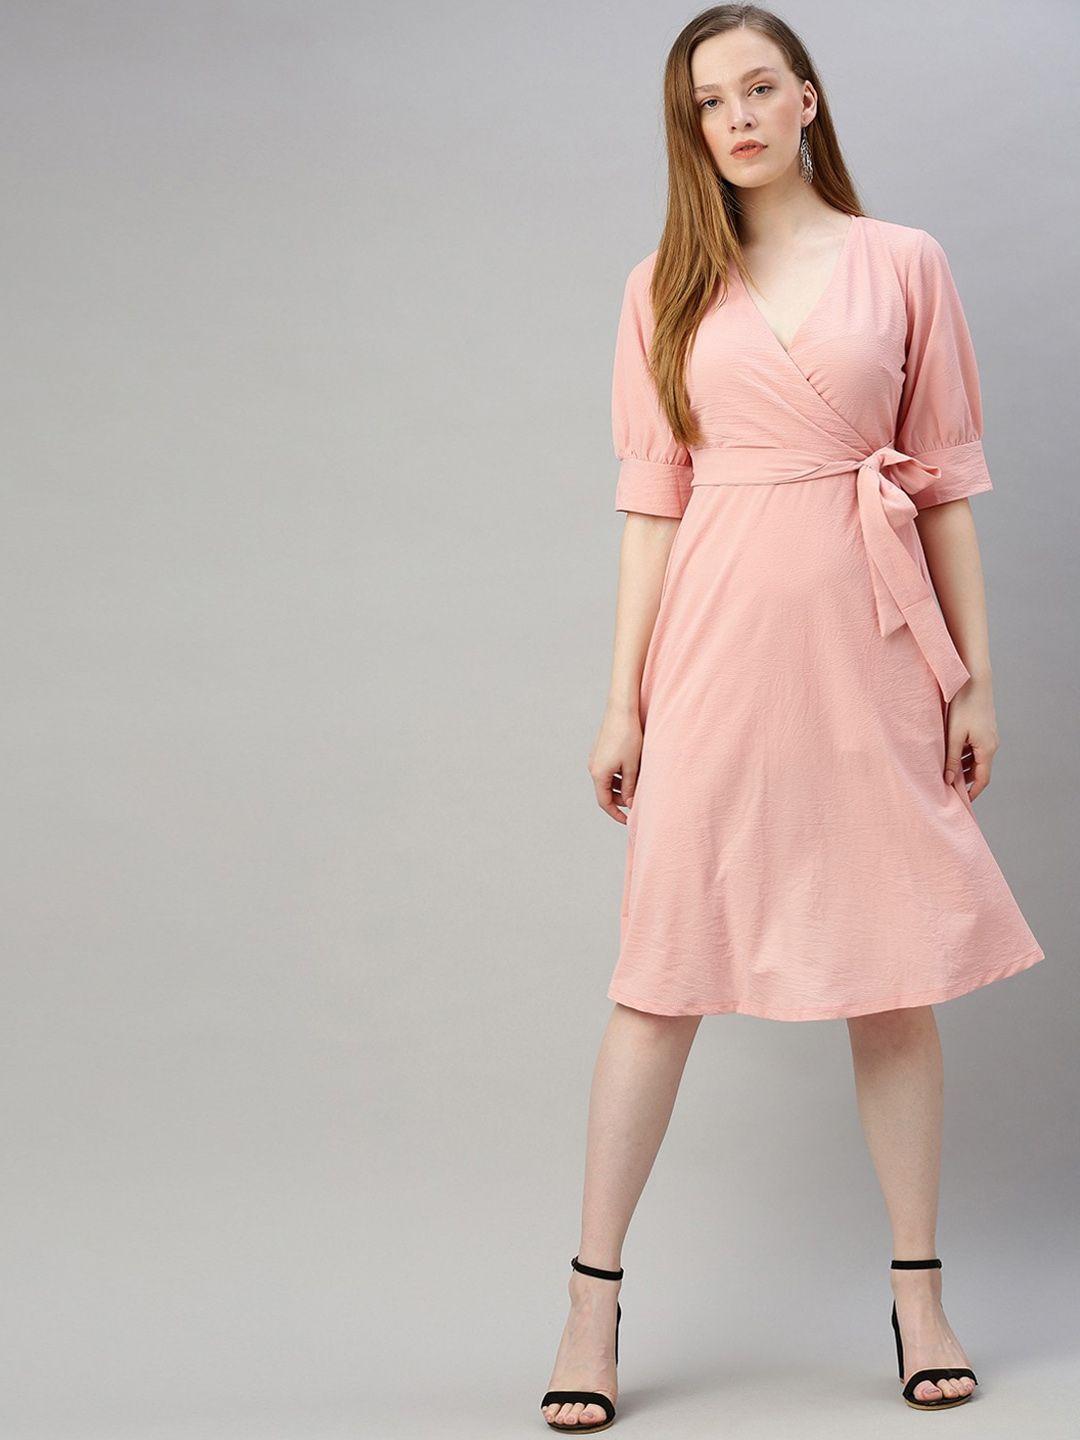 sera pink solid fit & flare dress